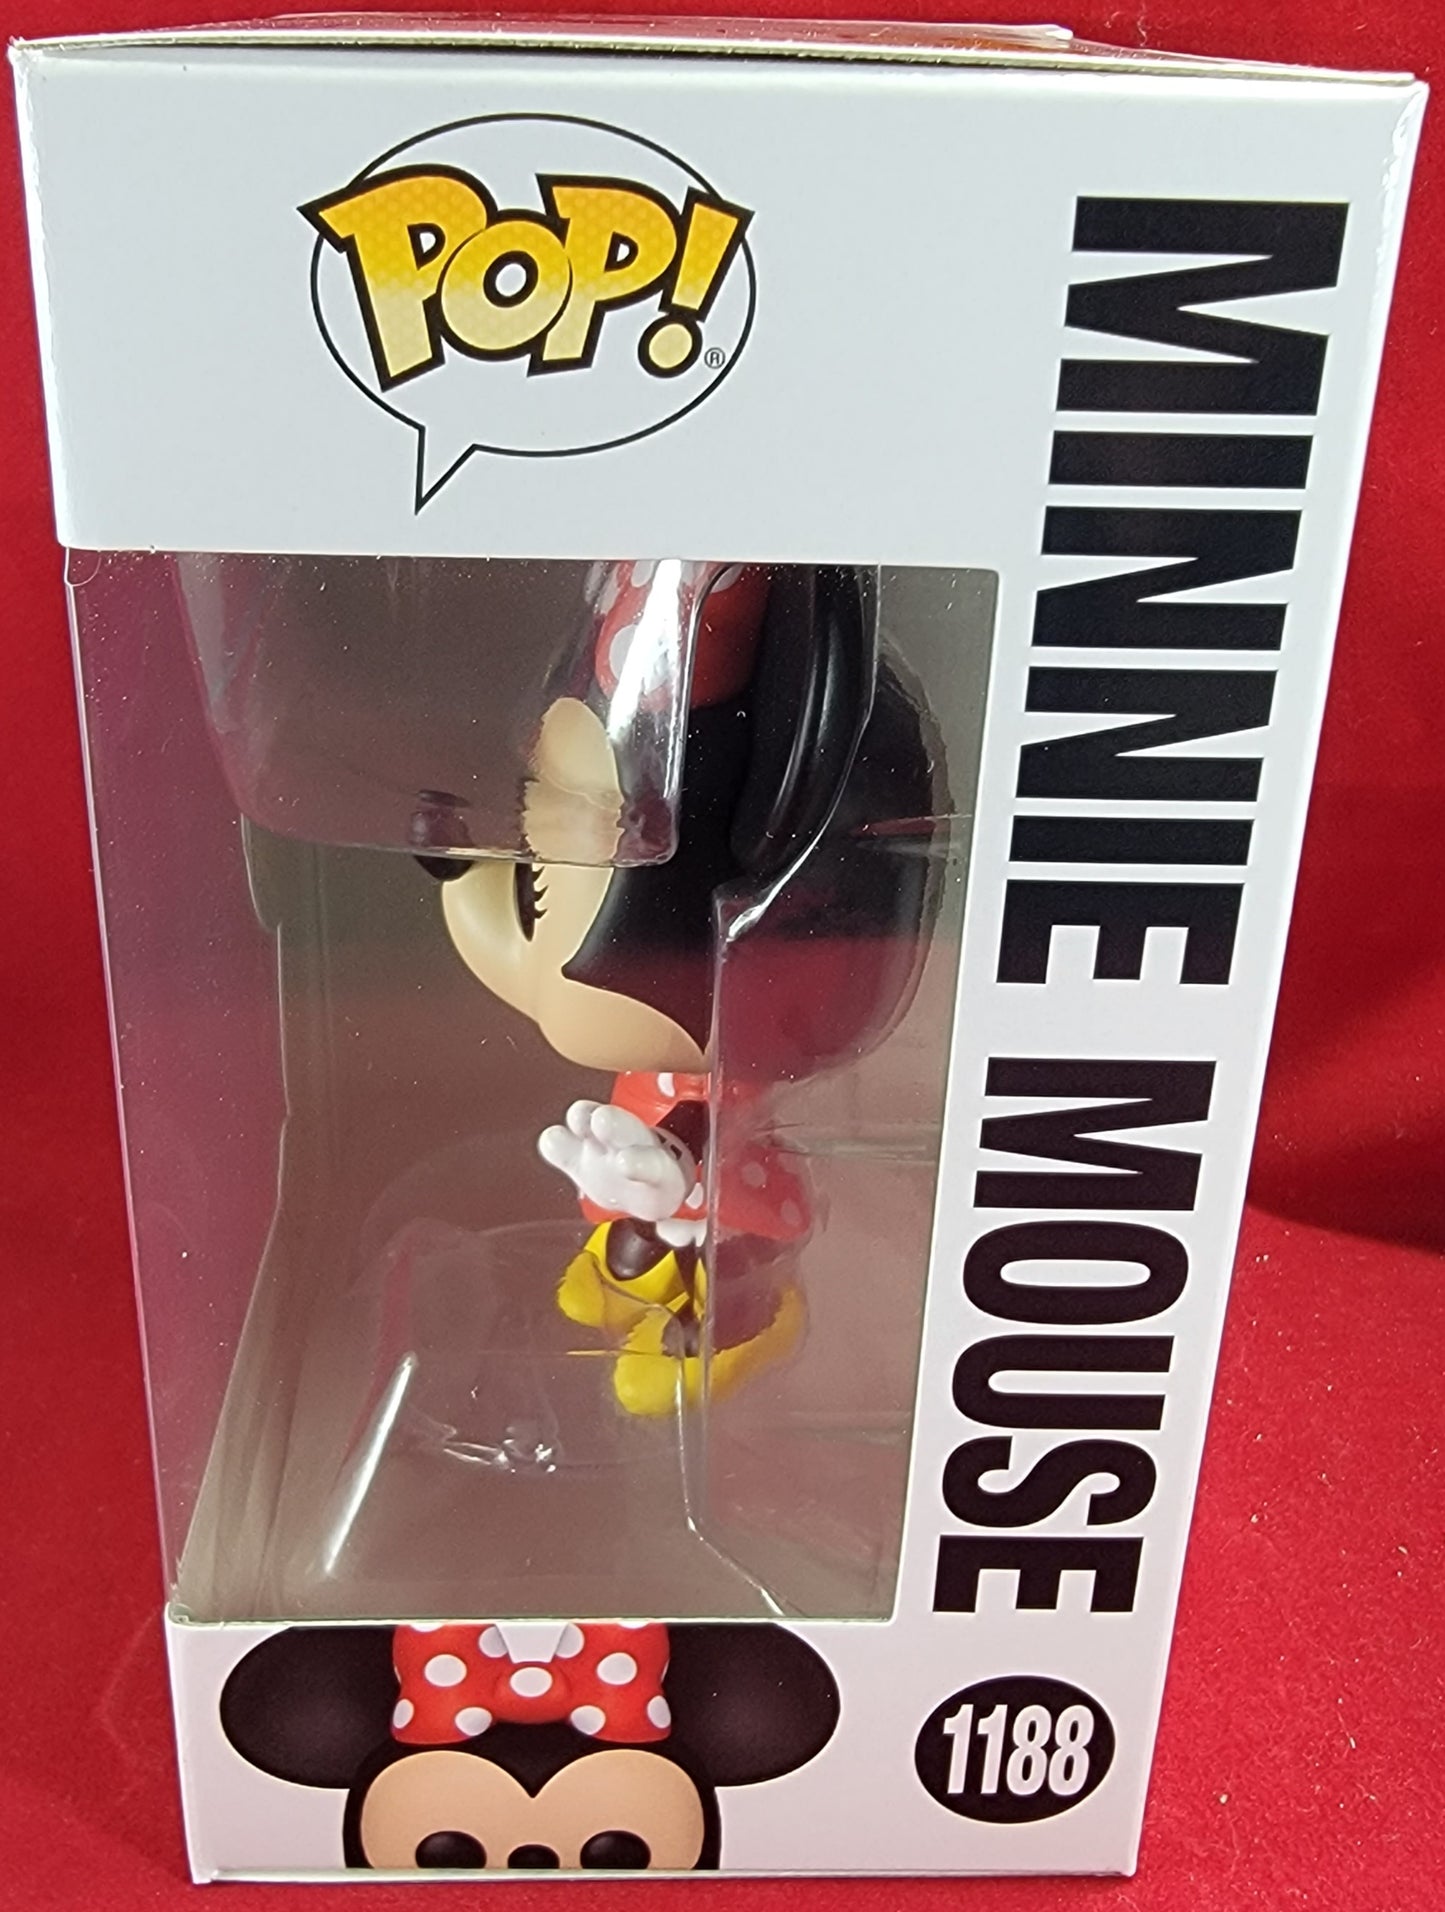 Minnie mouse funko # 1188 (nib)